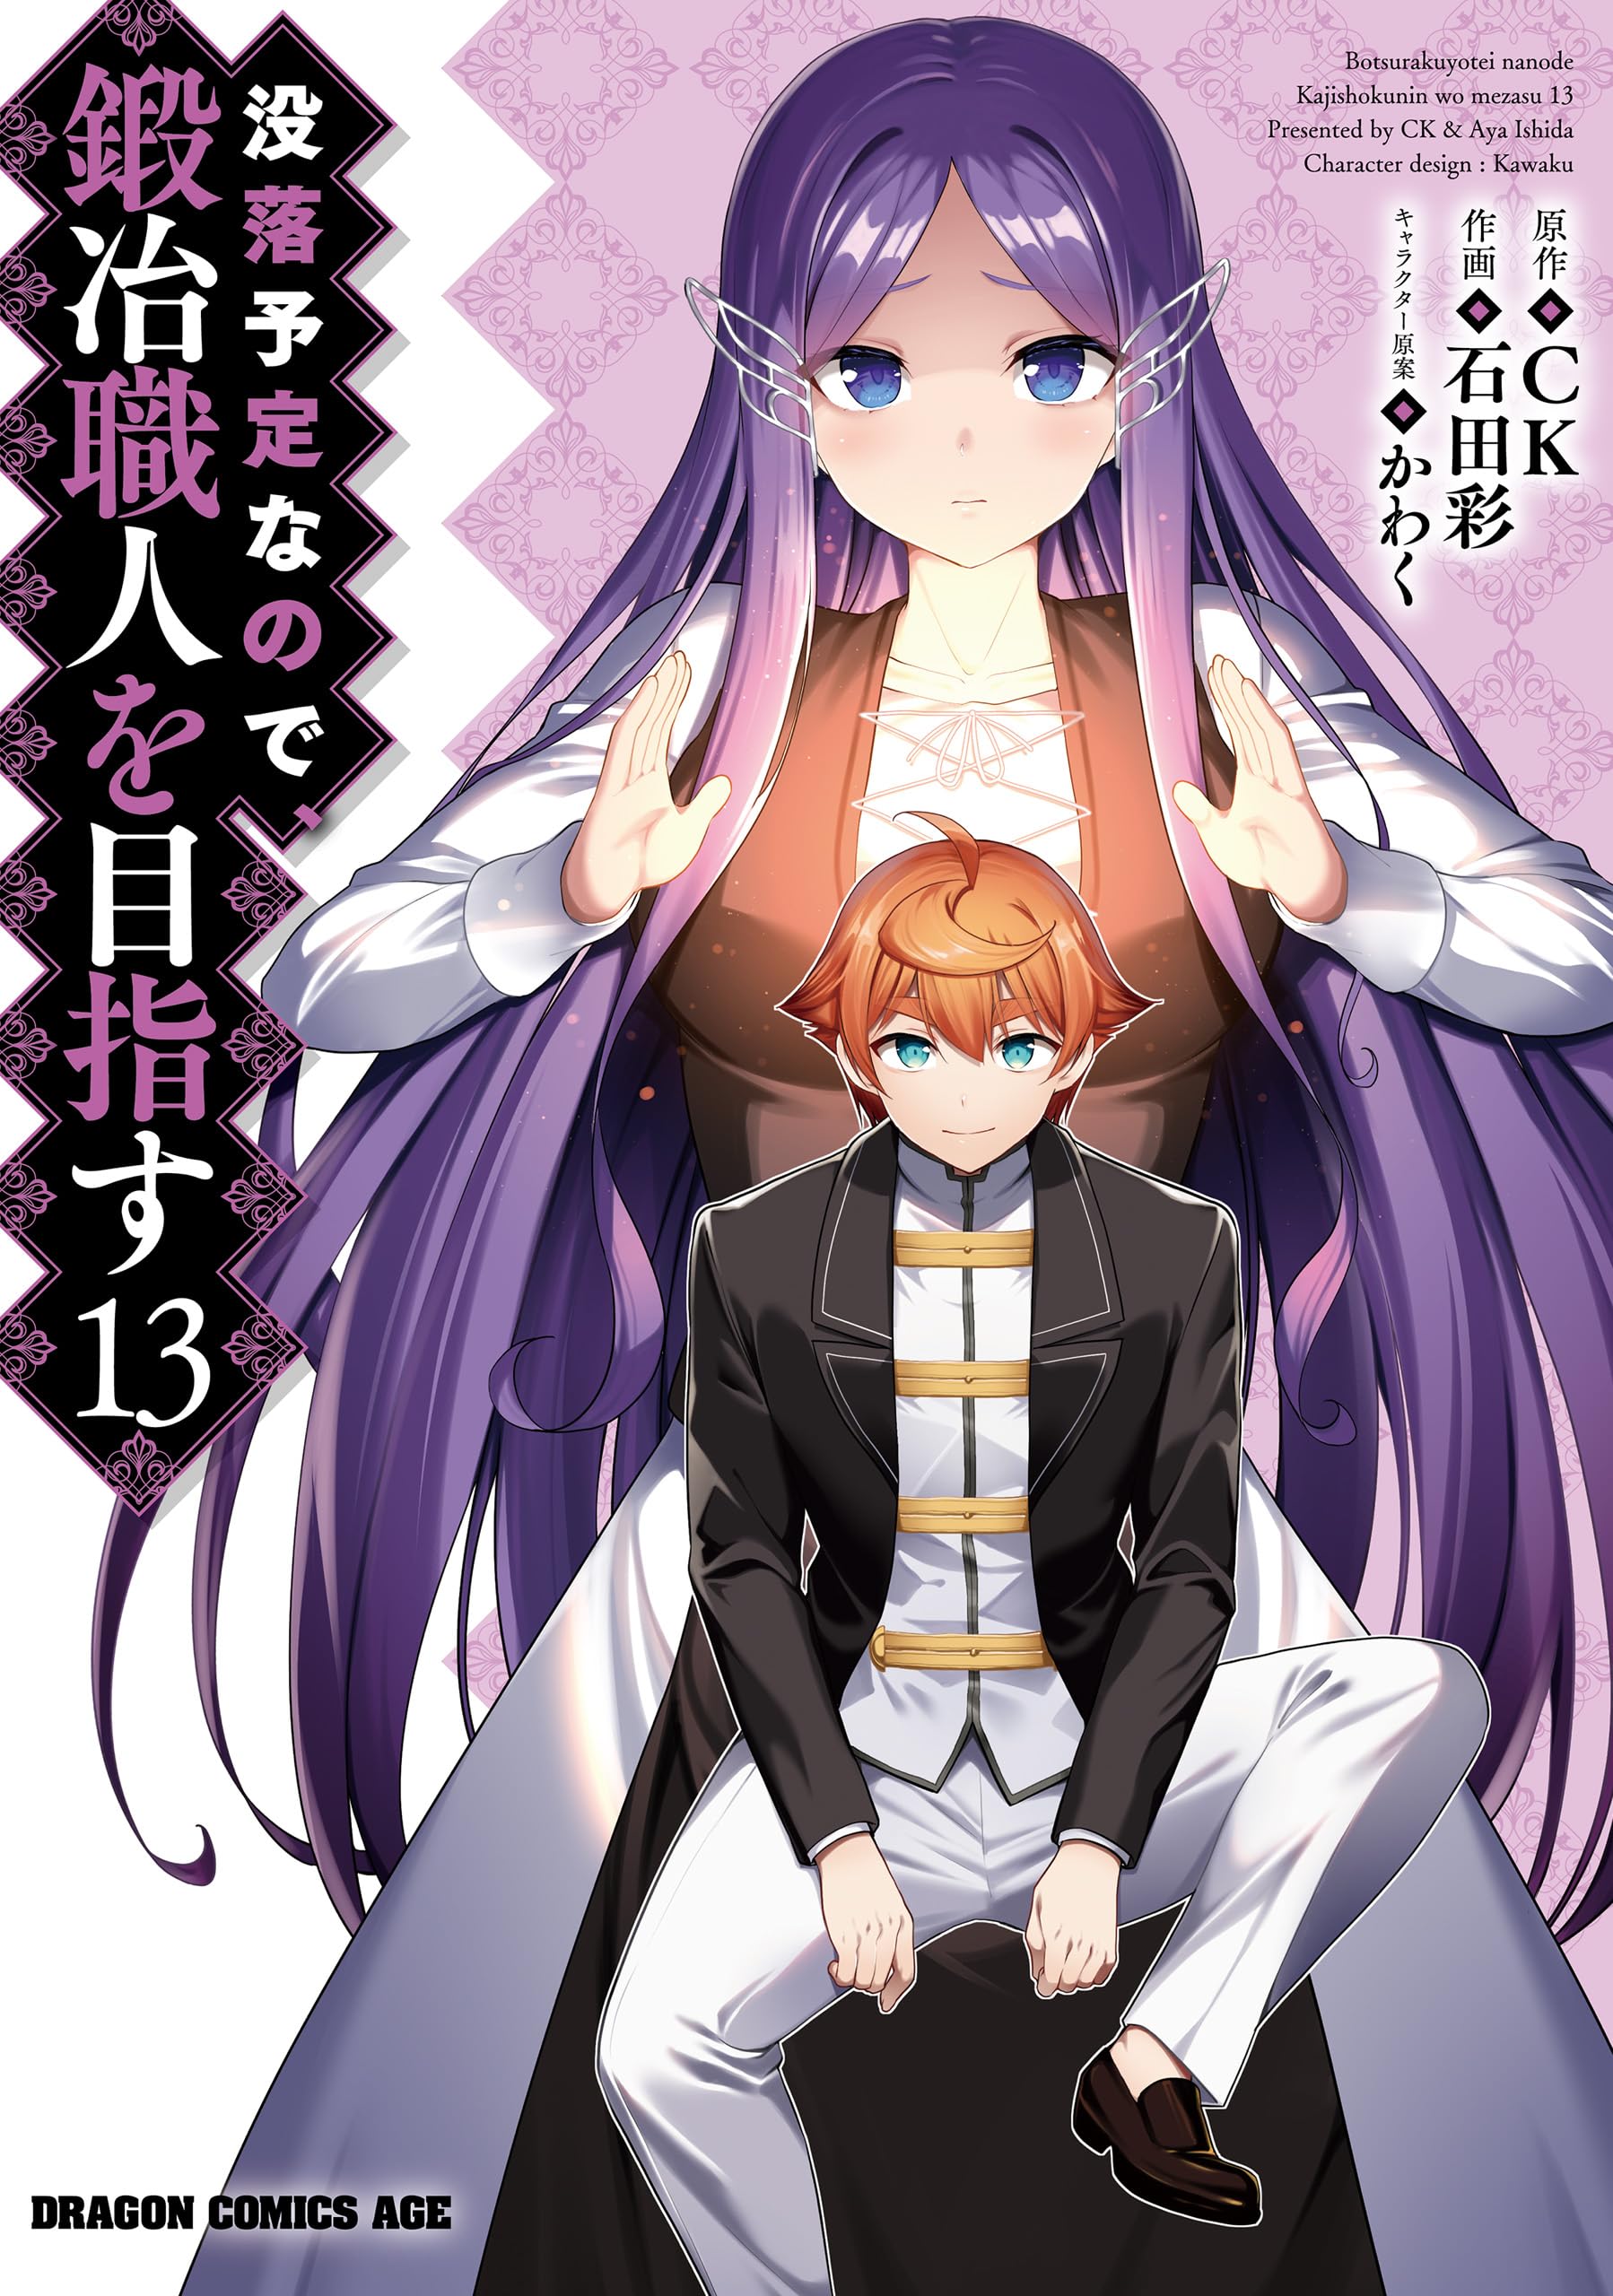 Re:Zero Light Novel Volume 13  Anime, Light novel, Anime images